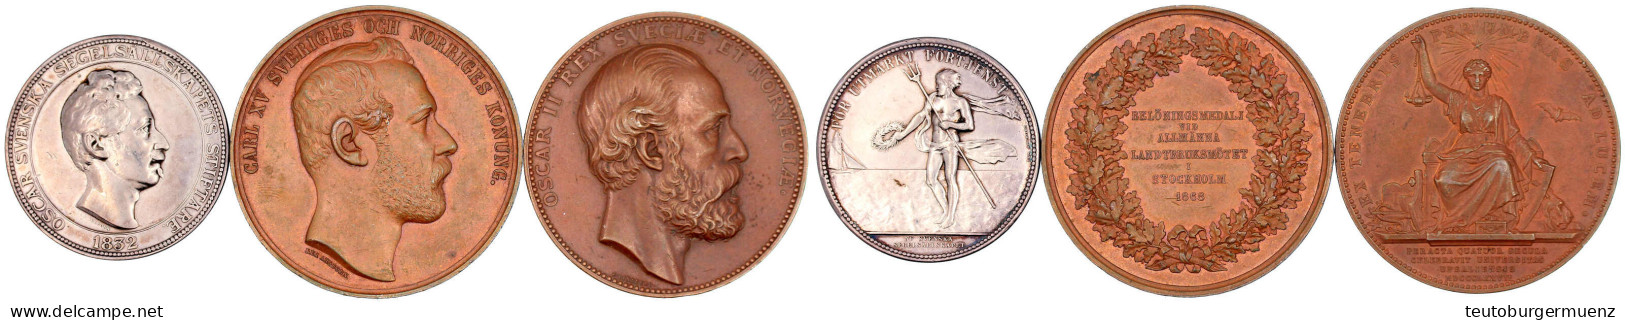 3 Medaillen: Oscar I. Silbermed. "1832" (spätere Prägung) Von Ahlborn, Regatta, 44 Mm, 41,89 G; Carl XV. Bronzemed. 1868 - Suède